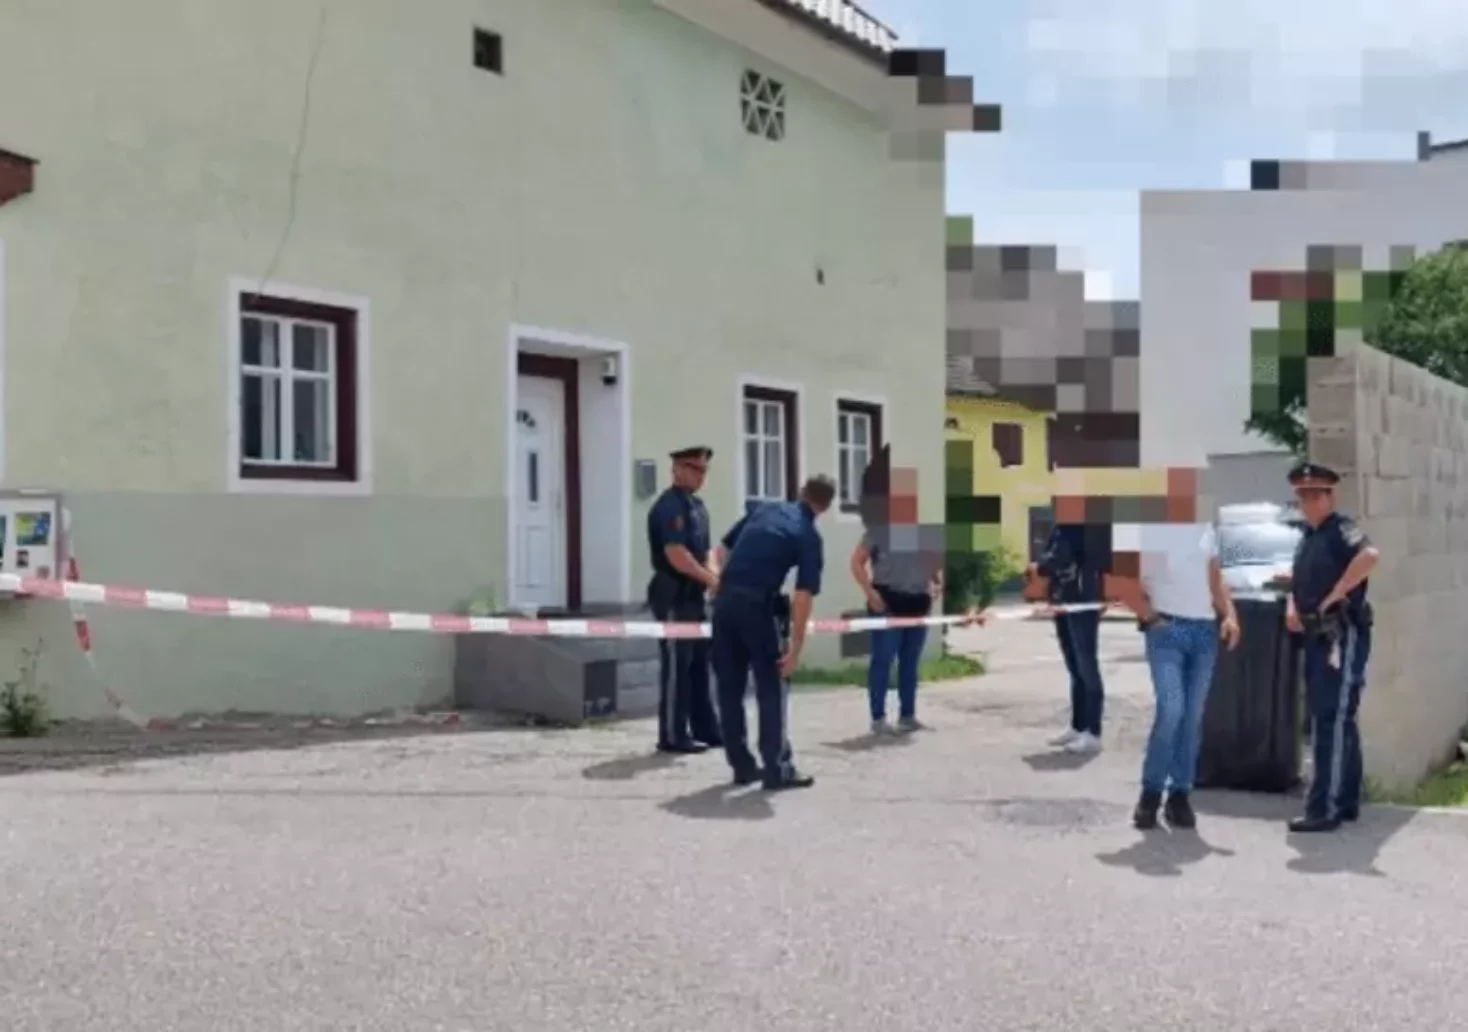 Bild auf 5min.at zeigt den Tatort eines Mordes in Kärnten. Polizei ist am Bild zu sehen.